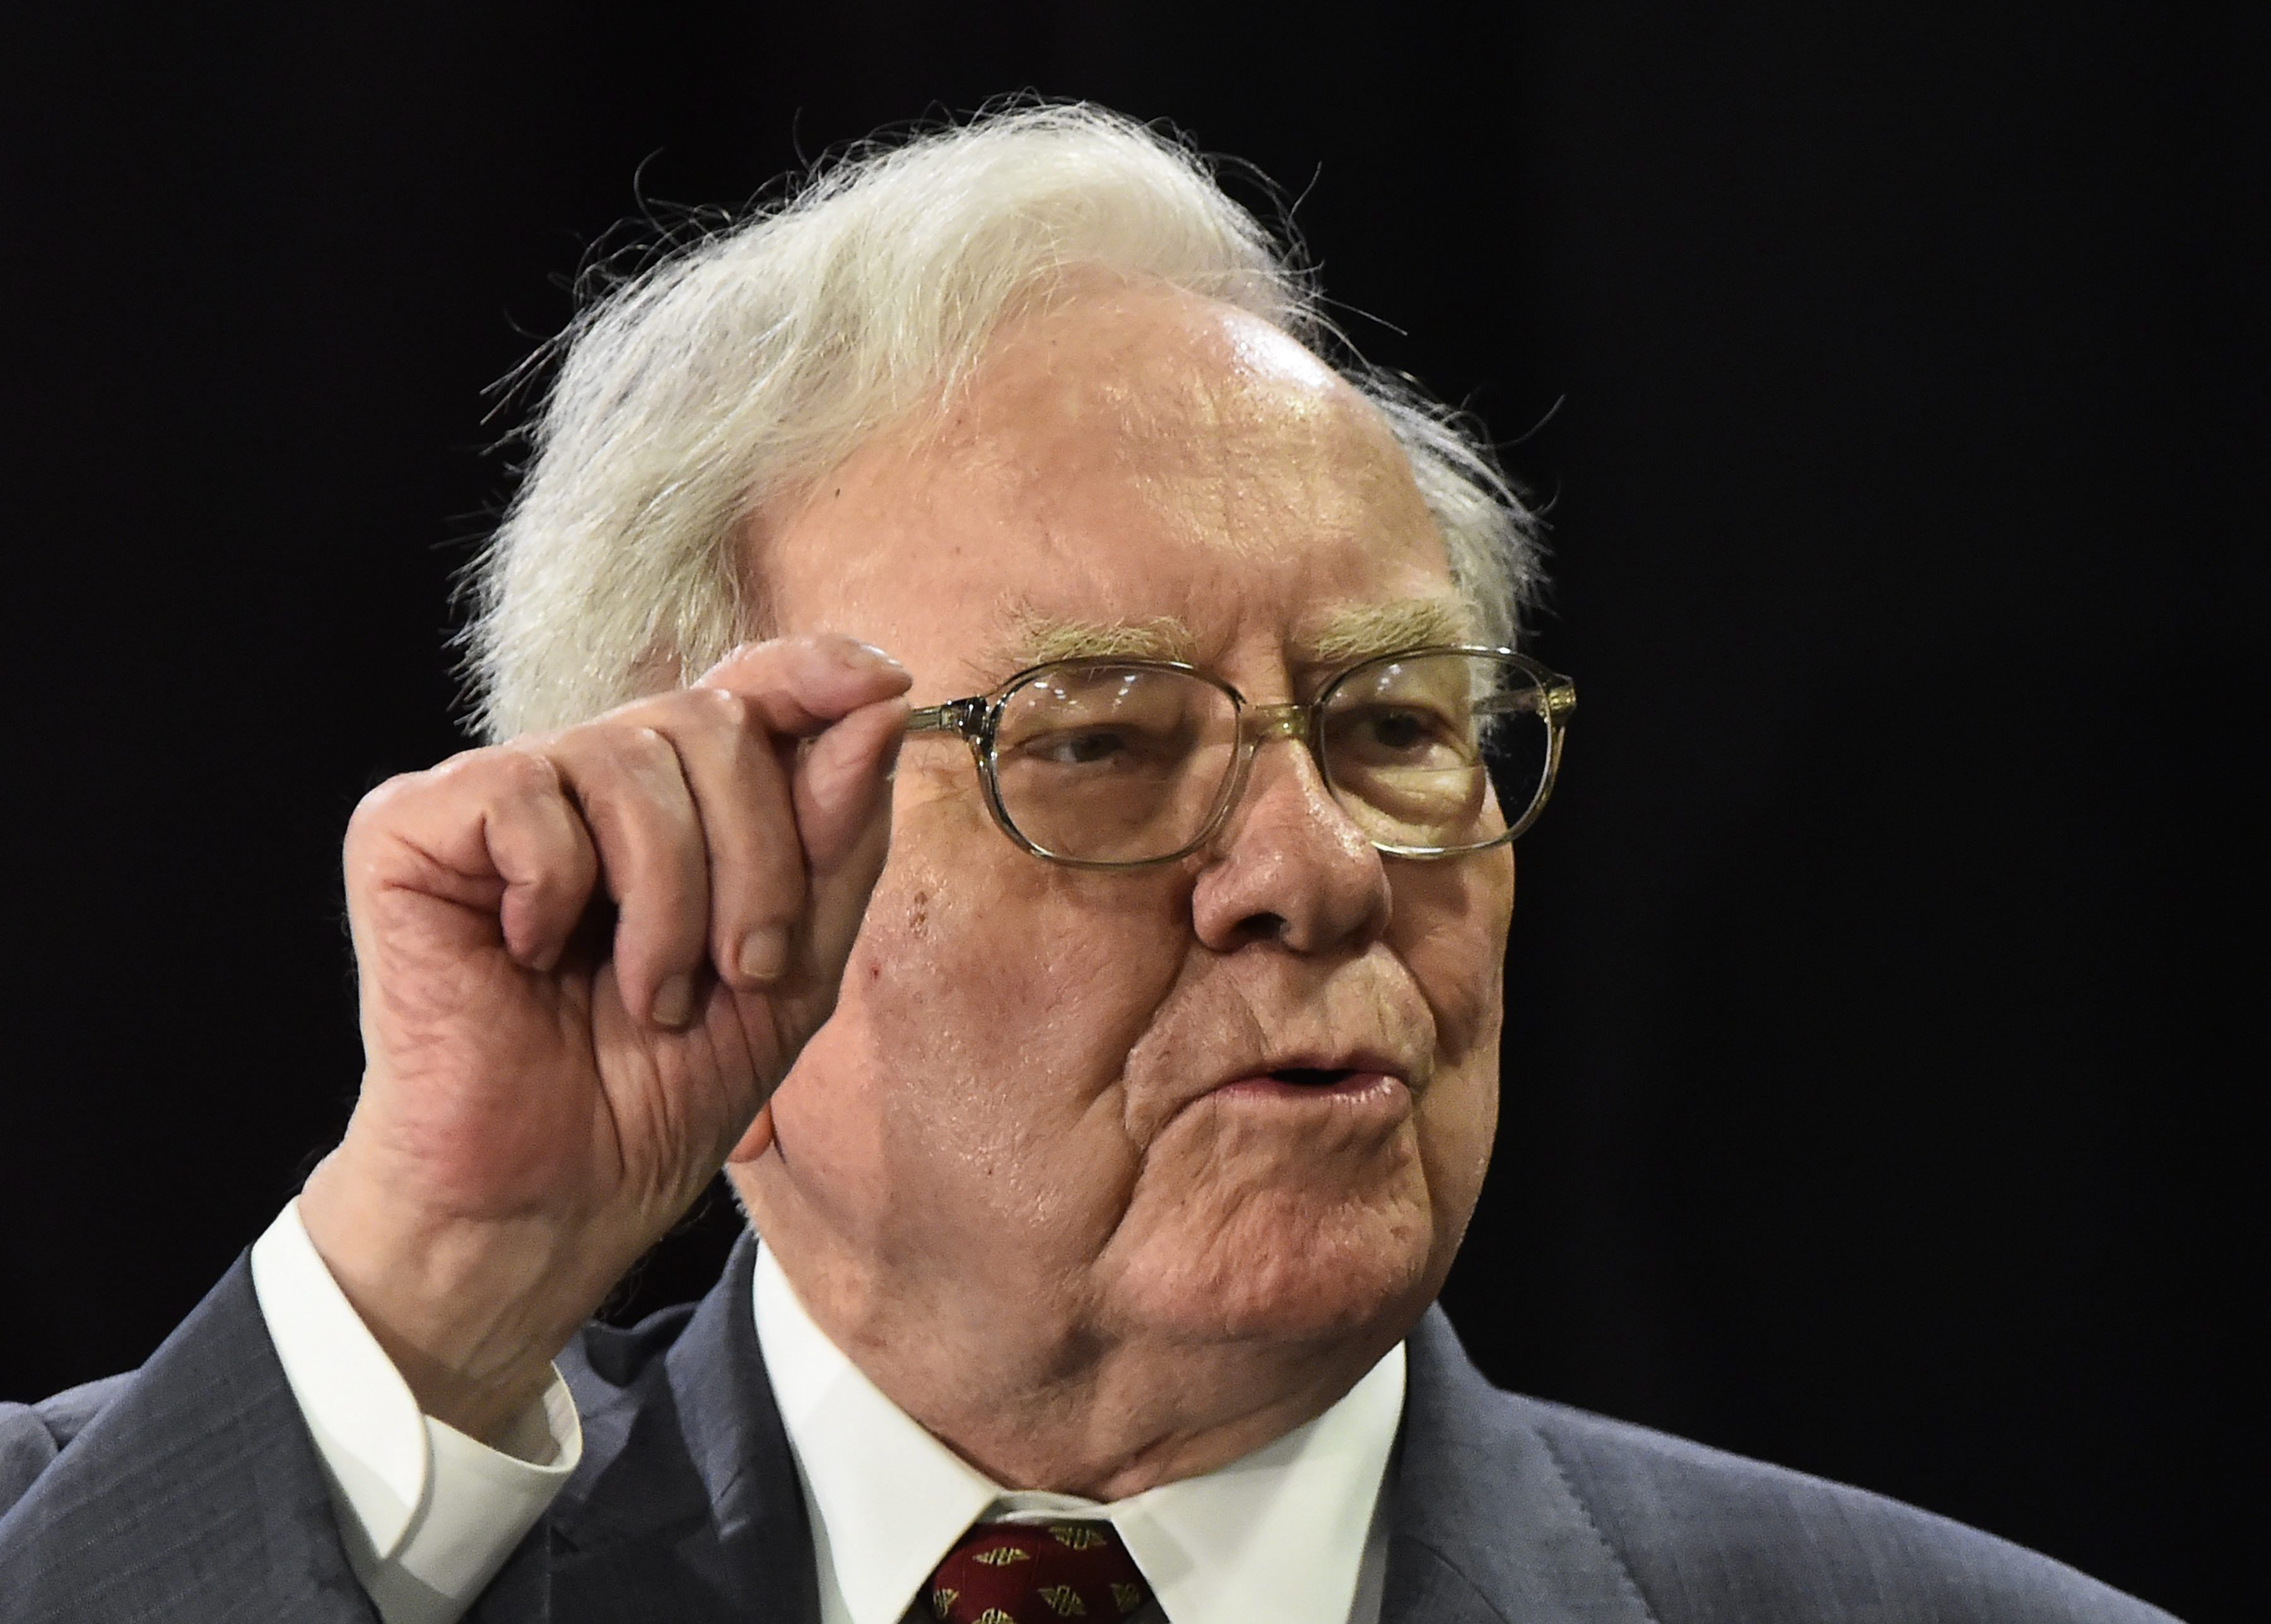 Warren Buffett's six best financial tips for the middle class